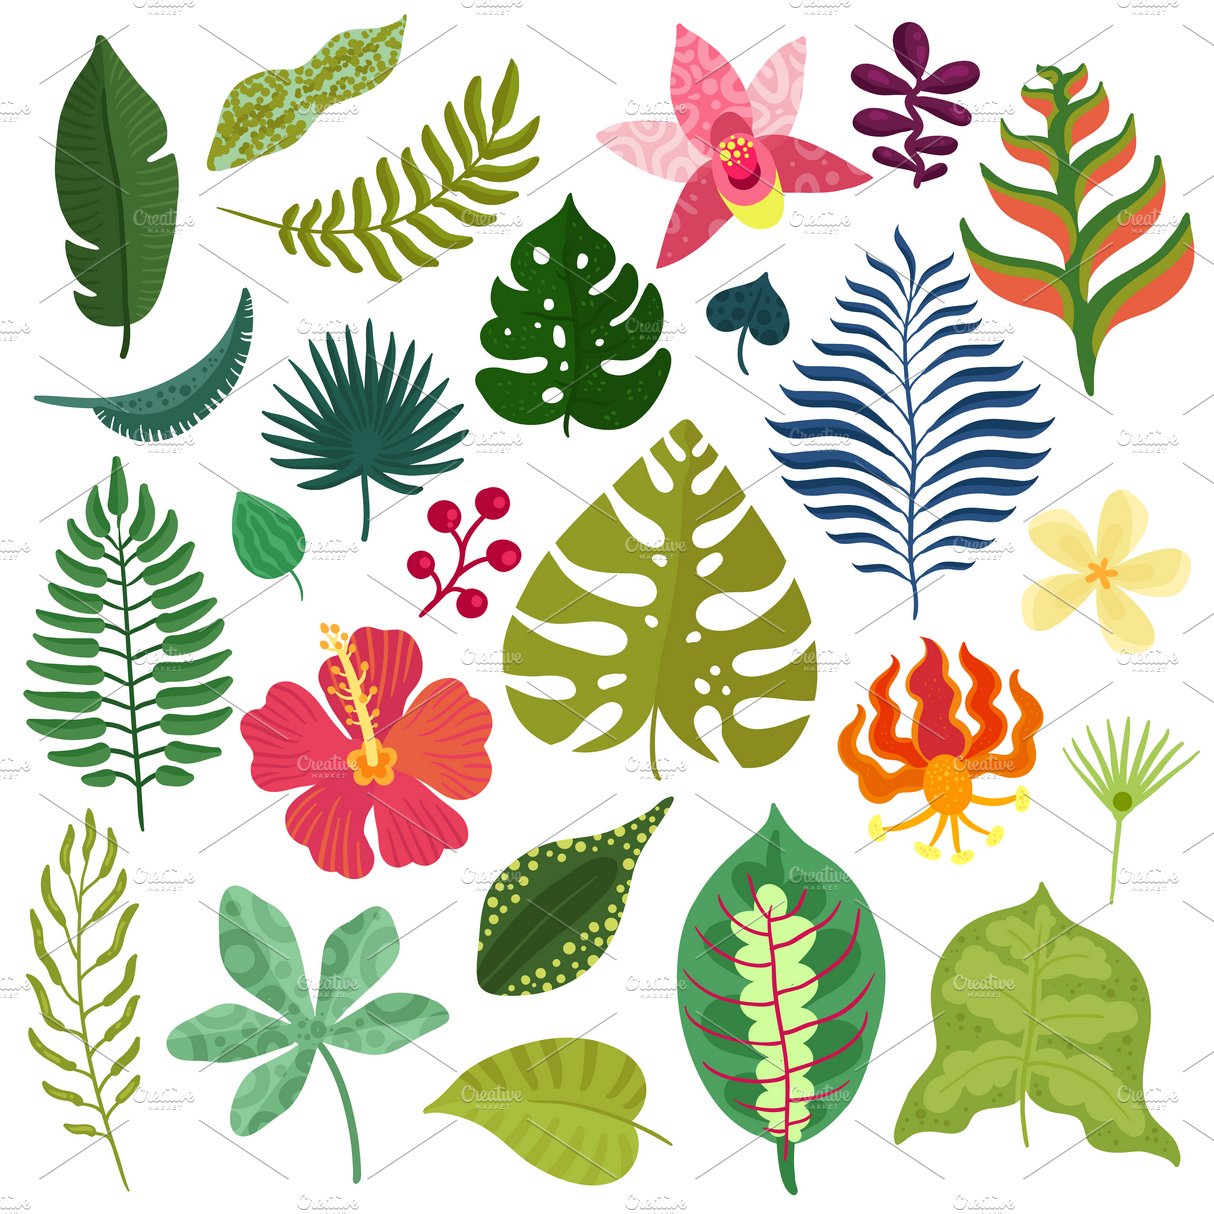 Tropical plants decorative elements cover image.